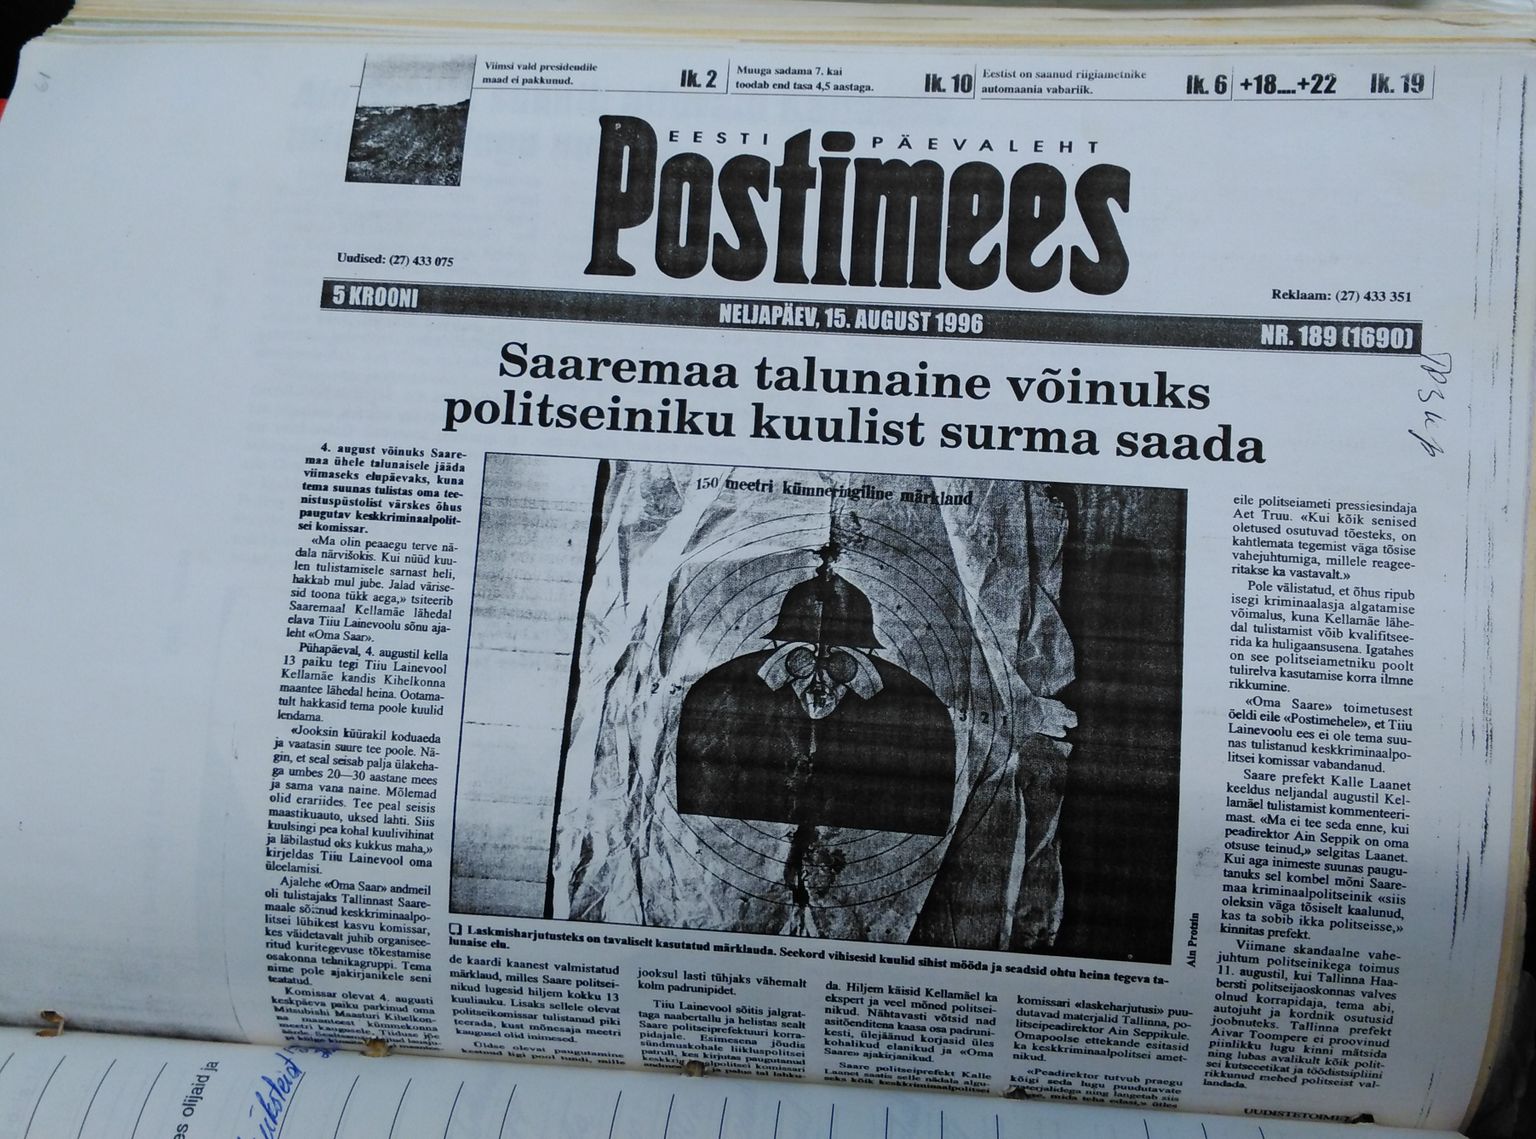 Kellamäe 4. augusti 1997 tulistamise kajastus 15. augusti Postimehes.